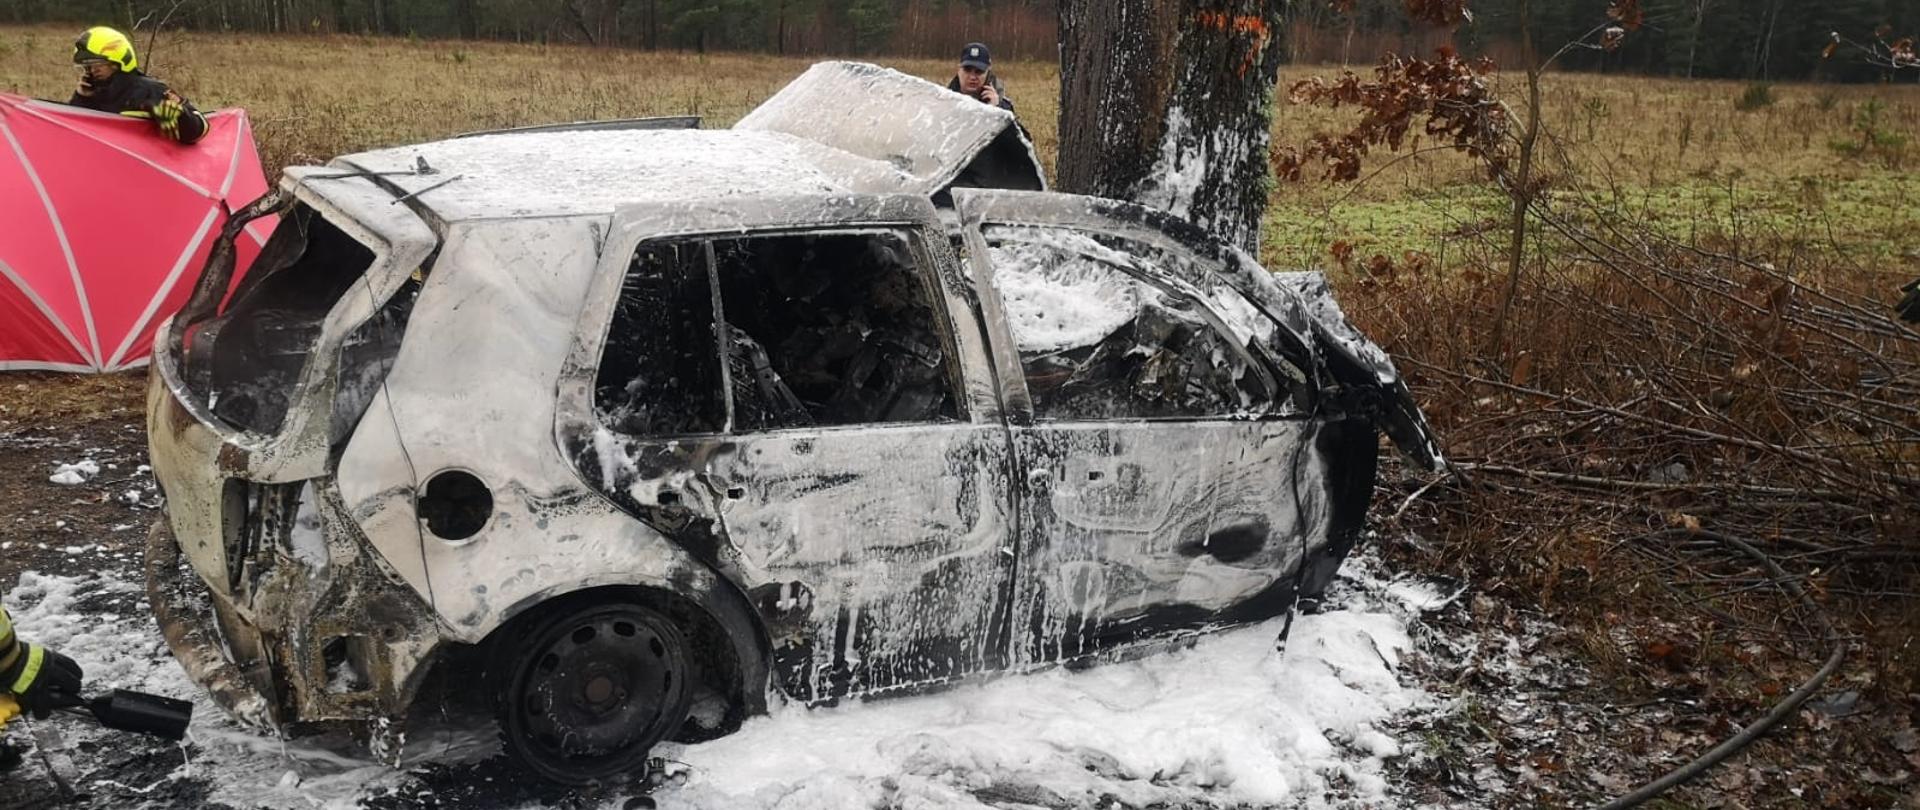 Zdjęcie przedstawia wrak spalonego samochodu, który wcześniej uderzył w drzewo. Auto pokryte jest pianą gaśniczą. Za autem znajduje się policjant, który rozmawia przez telefon oraz strażak trzymający czerwony parawan.